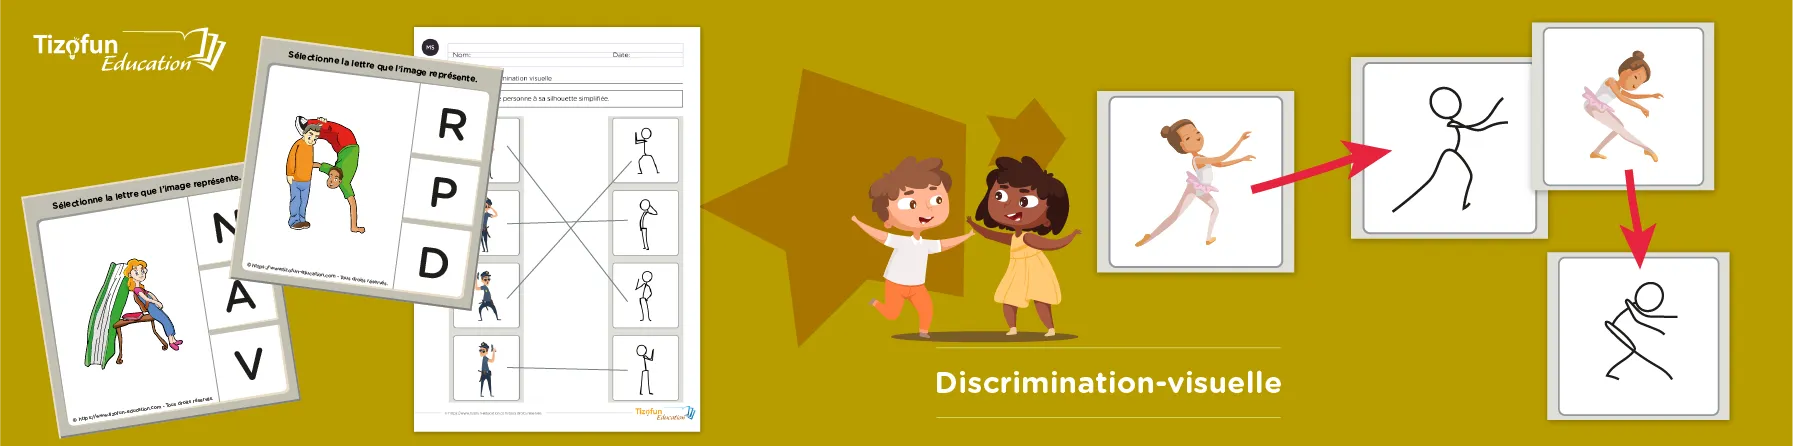 Exercices de discrimination visuelle pour enfants : formes et silhouettes